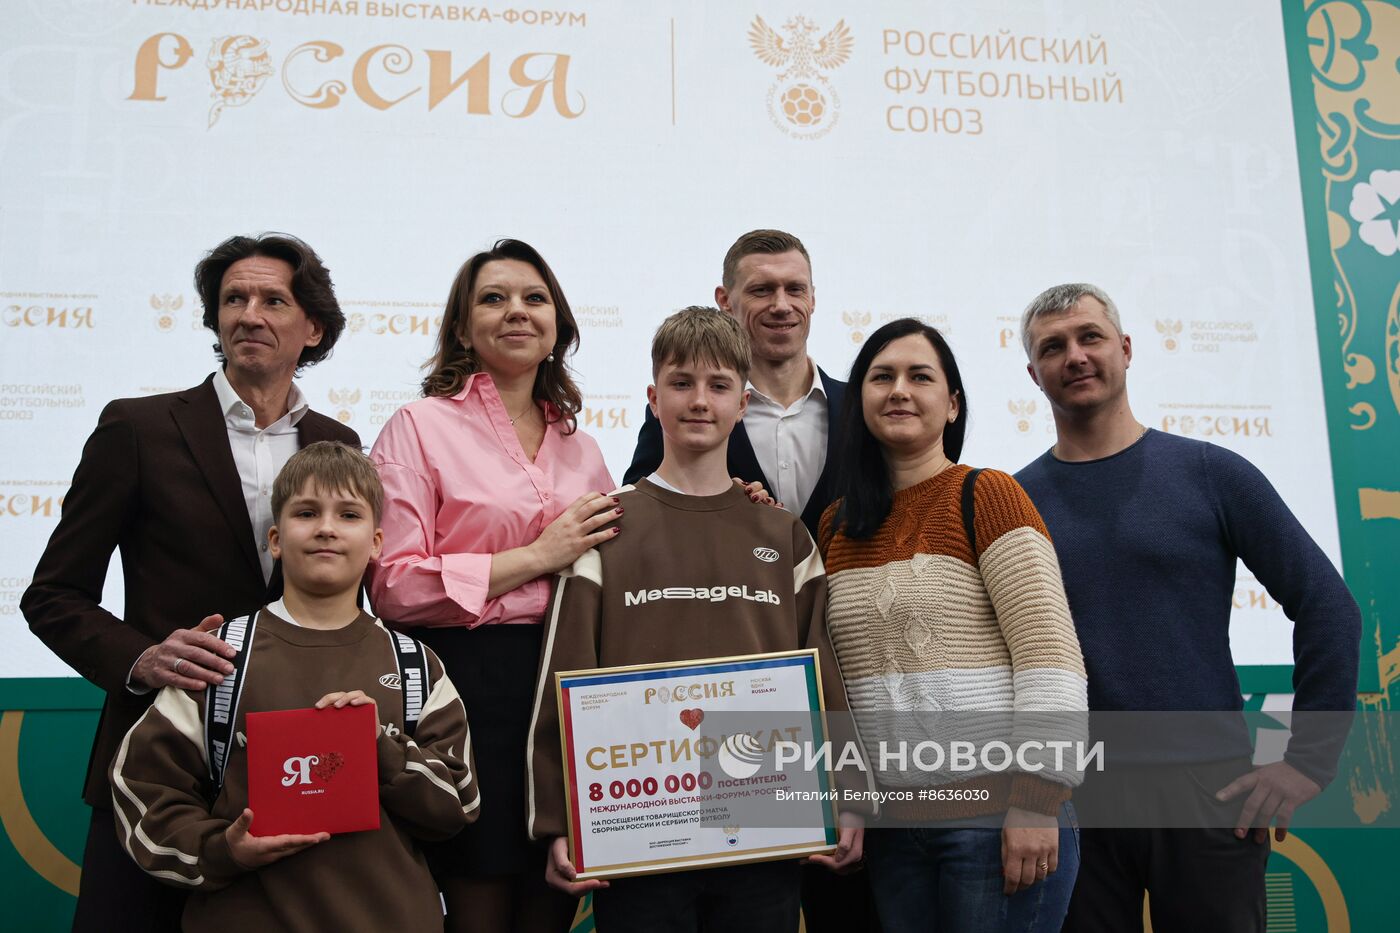 Выставка "Россия". Награждение 8-миллионного посетителя выставки